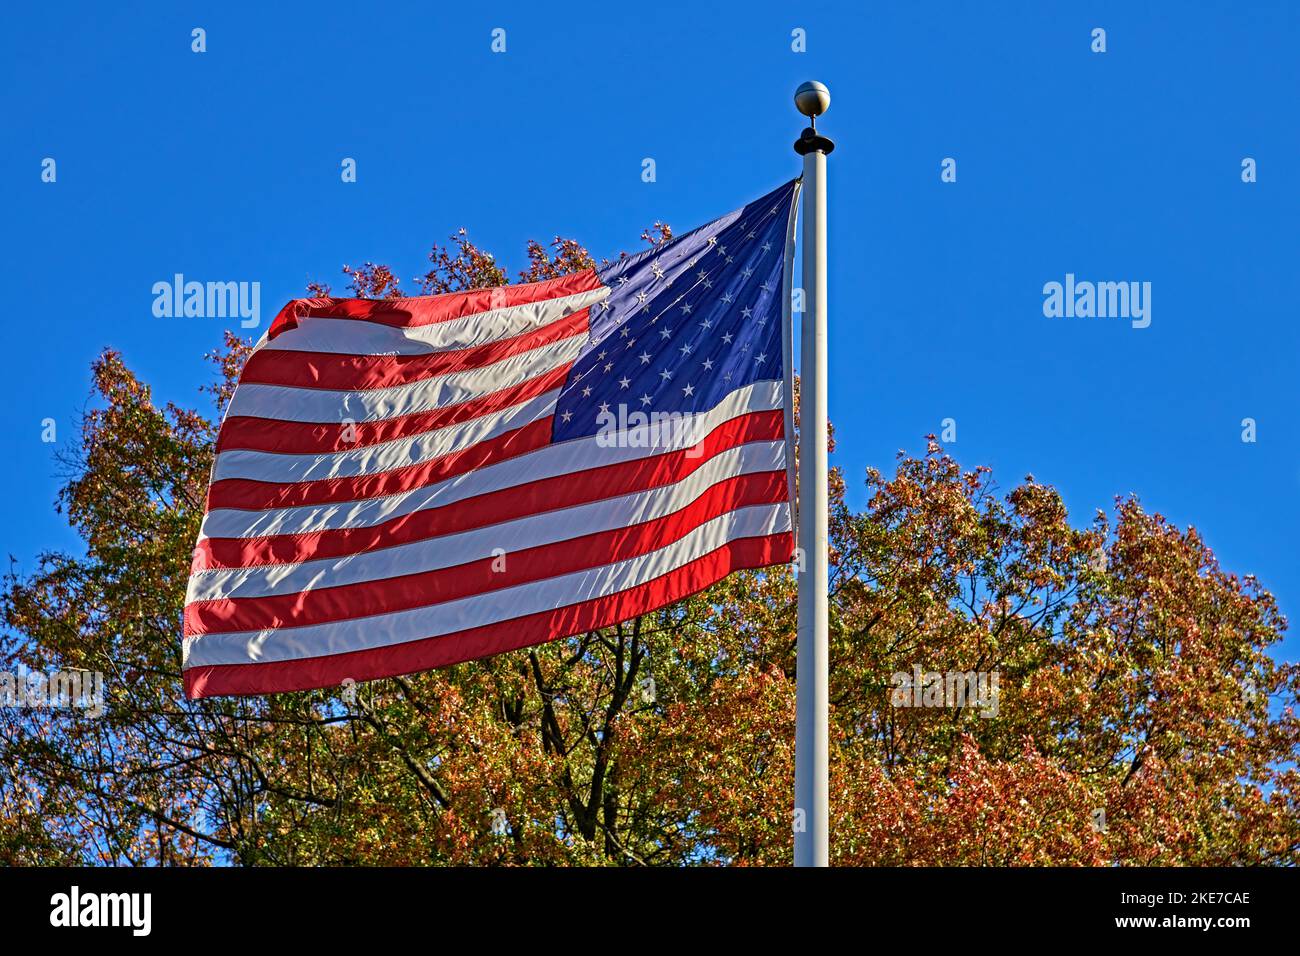 Un drapeau américain et américain agité dans le vent. Avec un arbre de couleur d'automne et un beau ciel bleu en arrière-plan. Banque D'Images